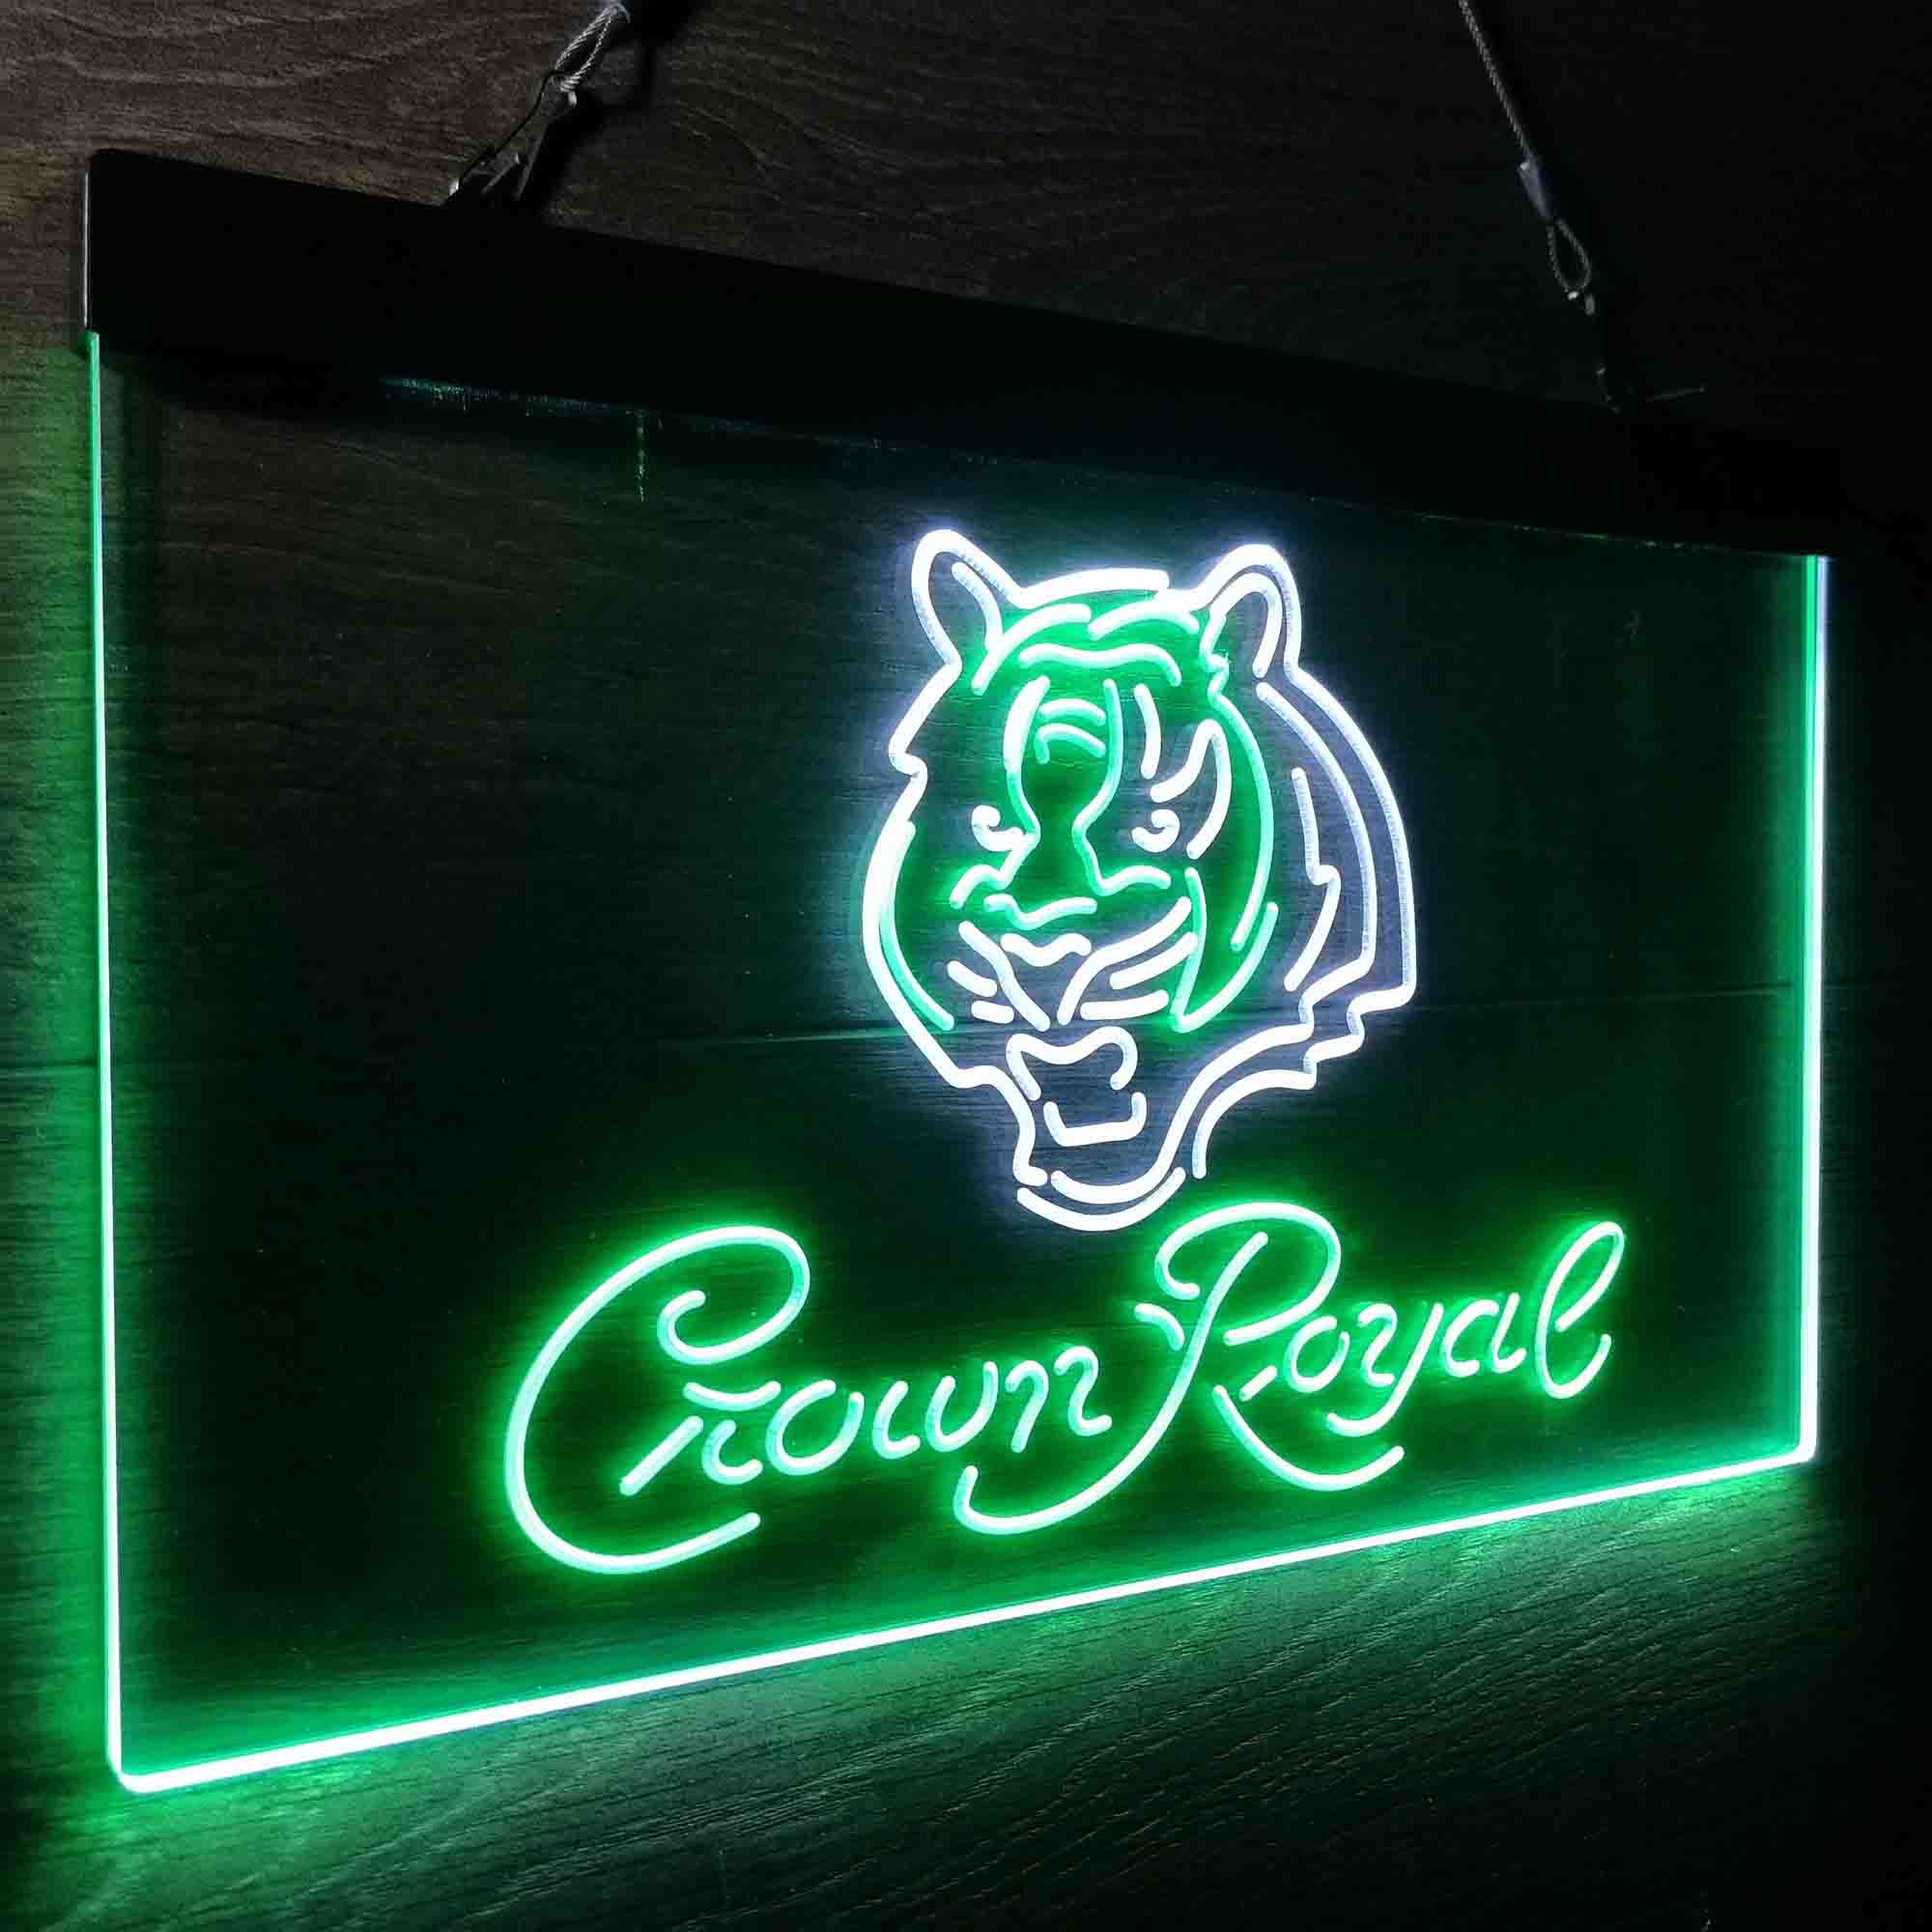 Crown Royal Bar Cincinnati Bengals Est. 1968 Neon-Like LED Sign - ProLedSign